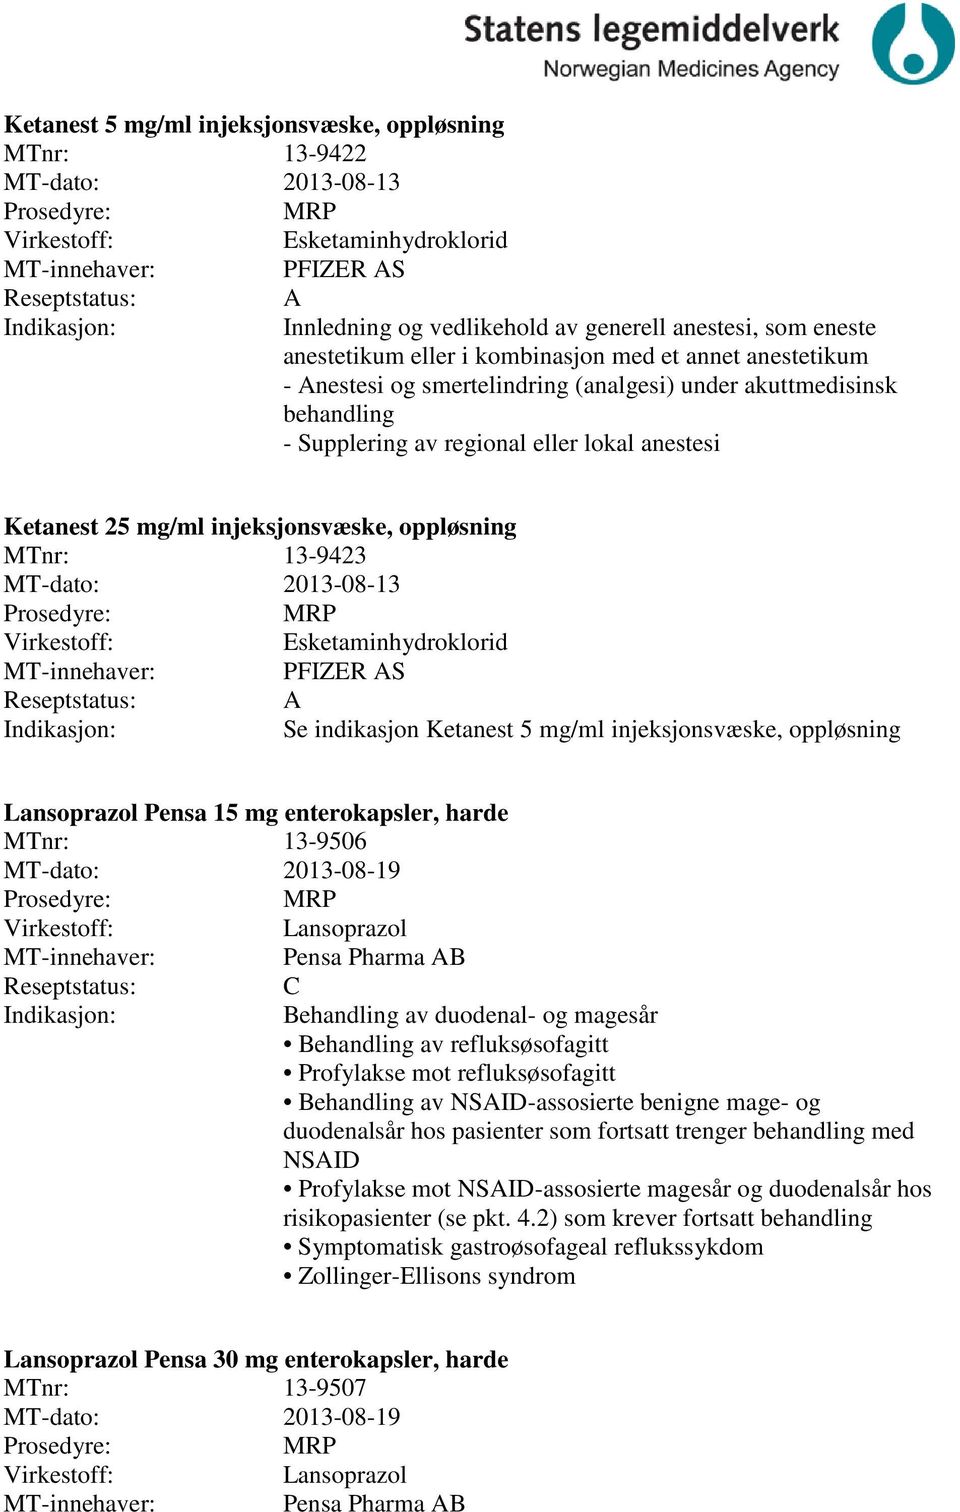 MT-dato: 2013-08-13 Esketaminhydroklorid PFIZER S Se indikasjon Ketanest 5 mg/ml injeksjonsvæske, oppløsning Lansoprazol Pensa 15 mg enterokapsler, harde 13-9506 MT-dato: 2013-08-19 Lansoprazol Pensa